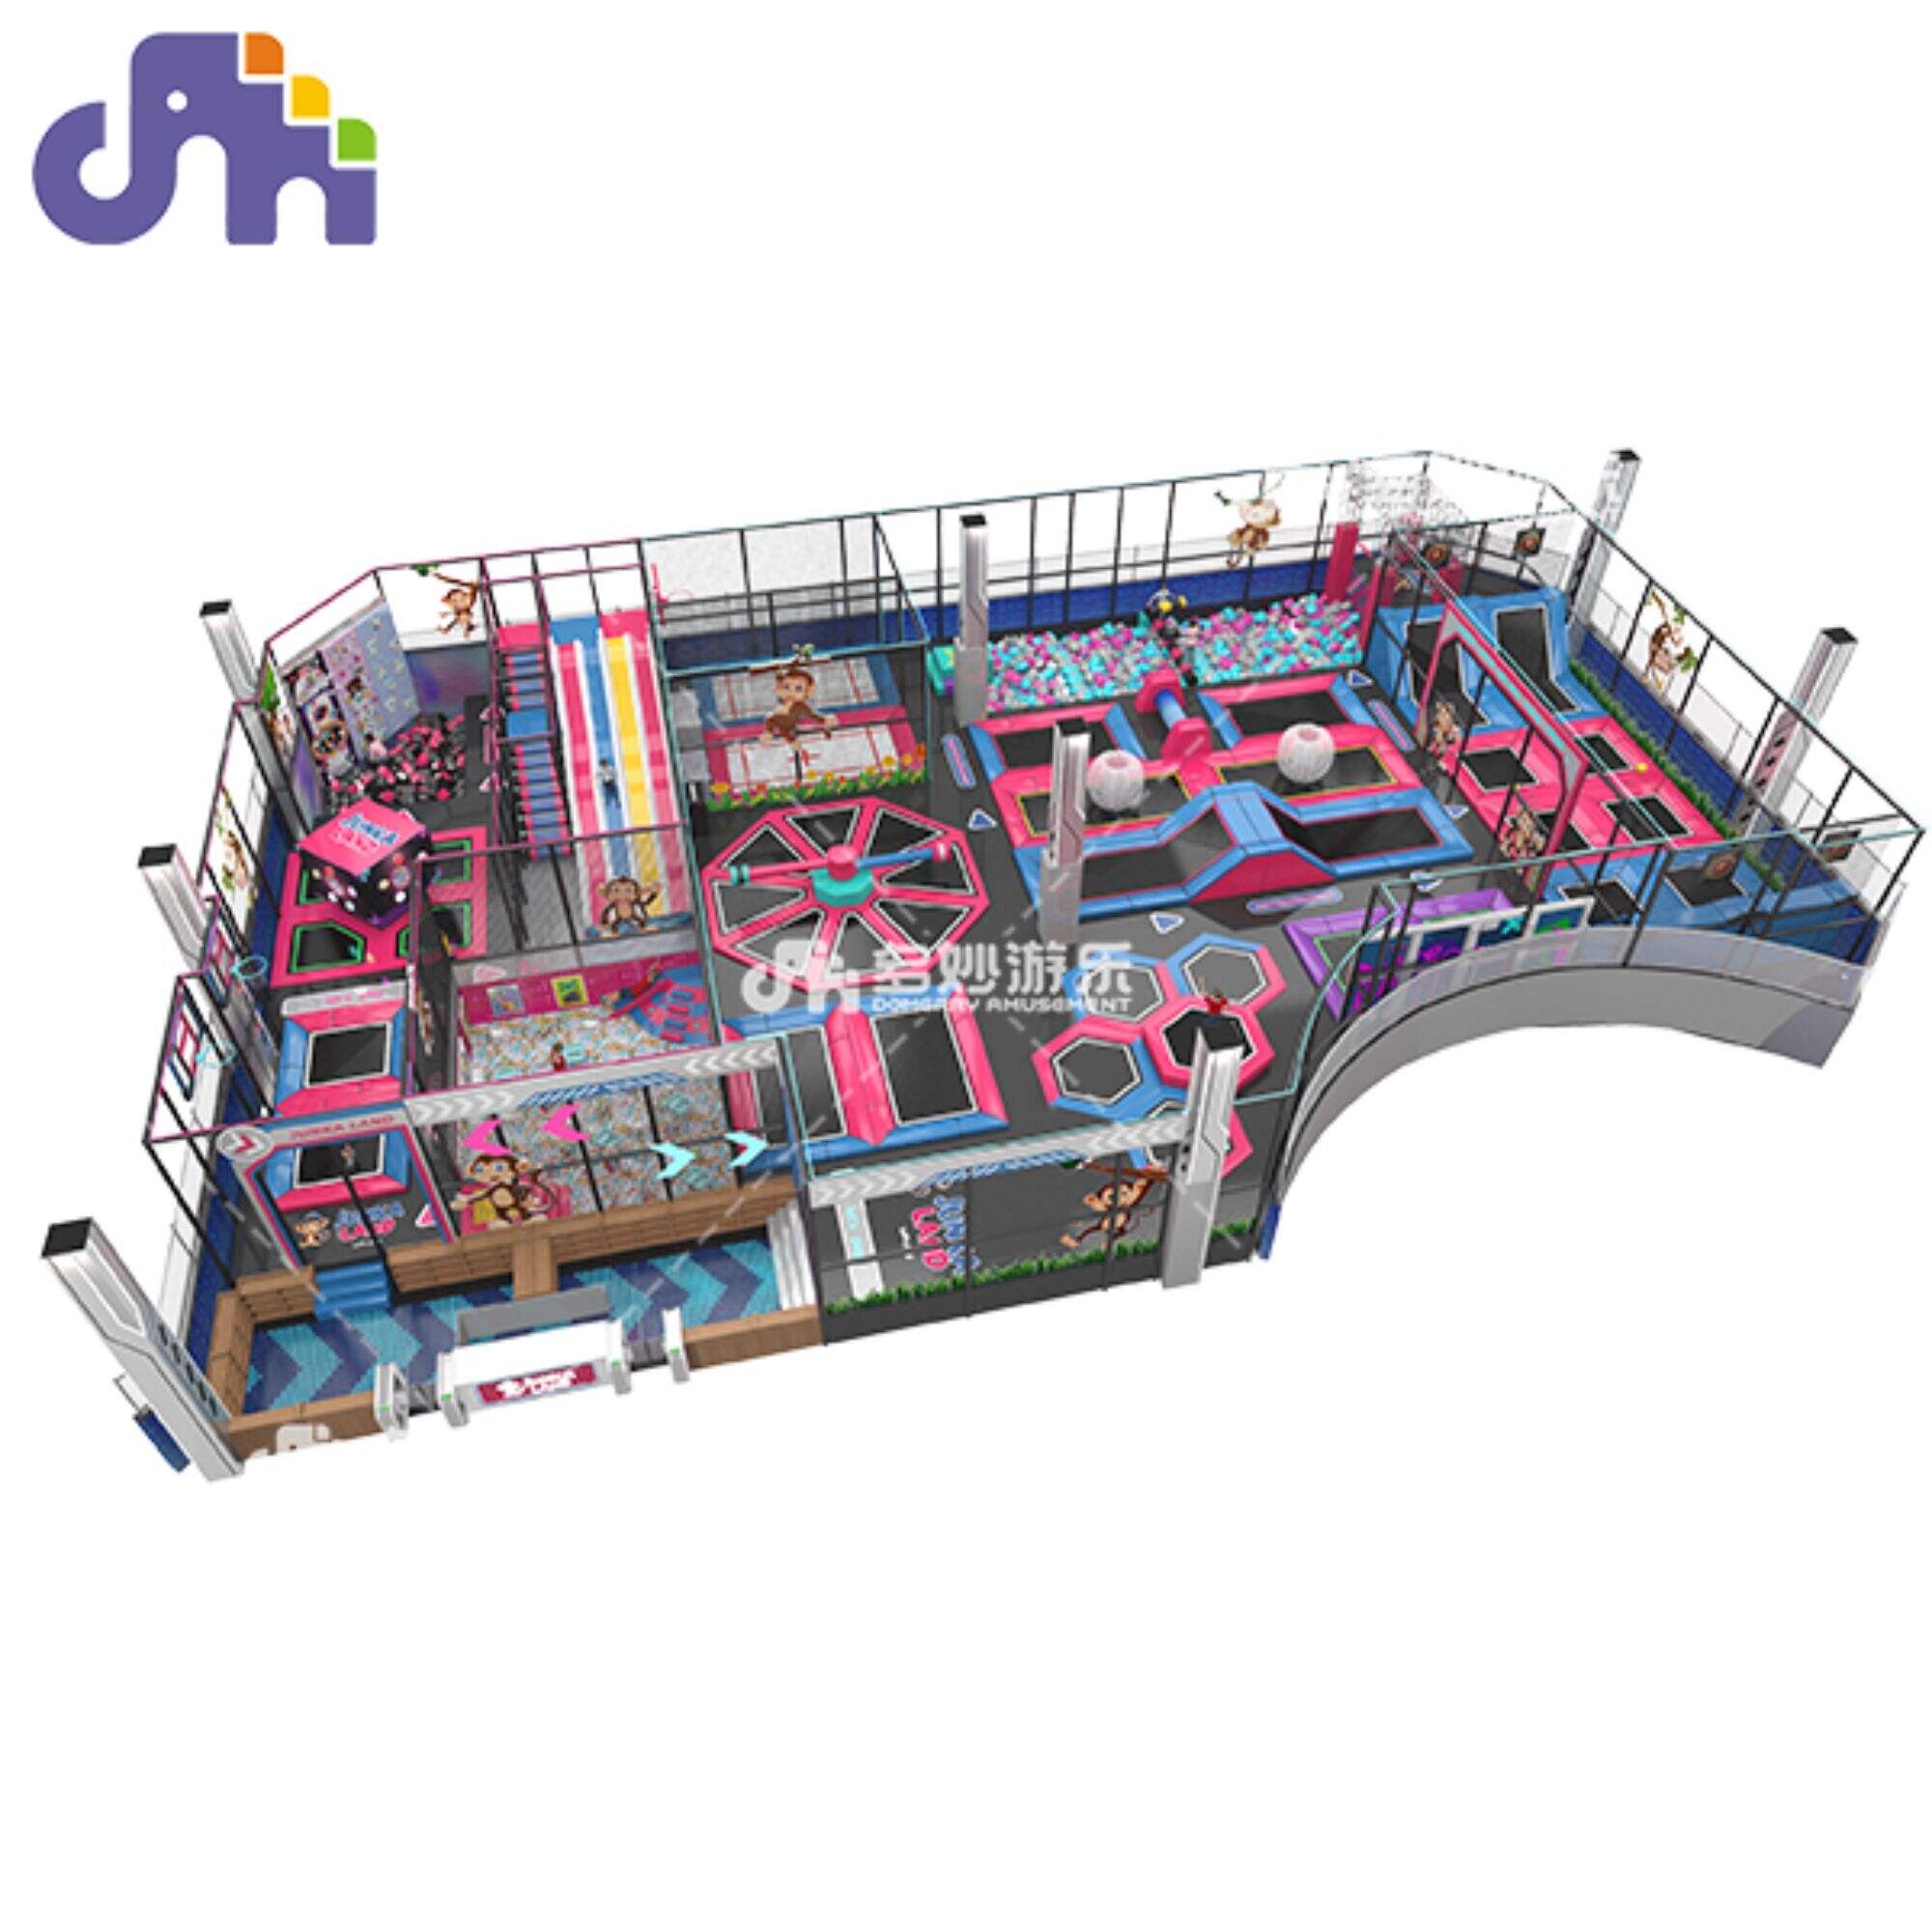 စျေးဝယ်စင်တာများတွင်ရရှိနိုင်သော Adult Jumping Trampoline ဖြင့်ထုတ်လုပ်ထားသော Kids Trampoline Park